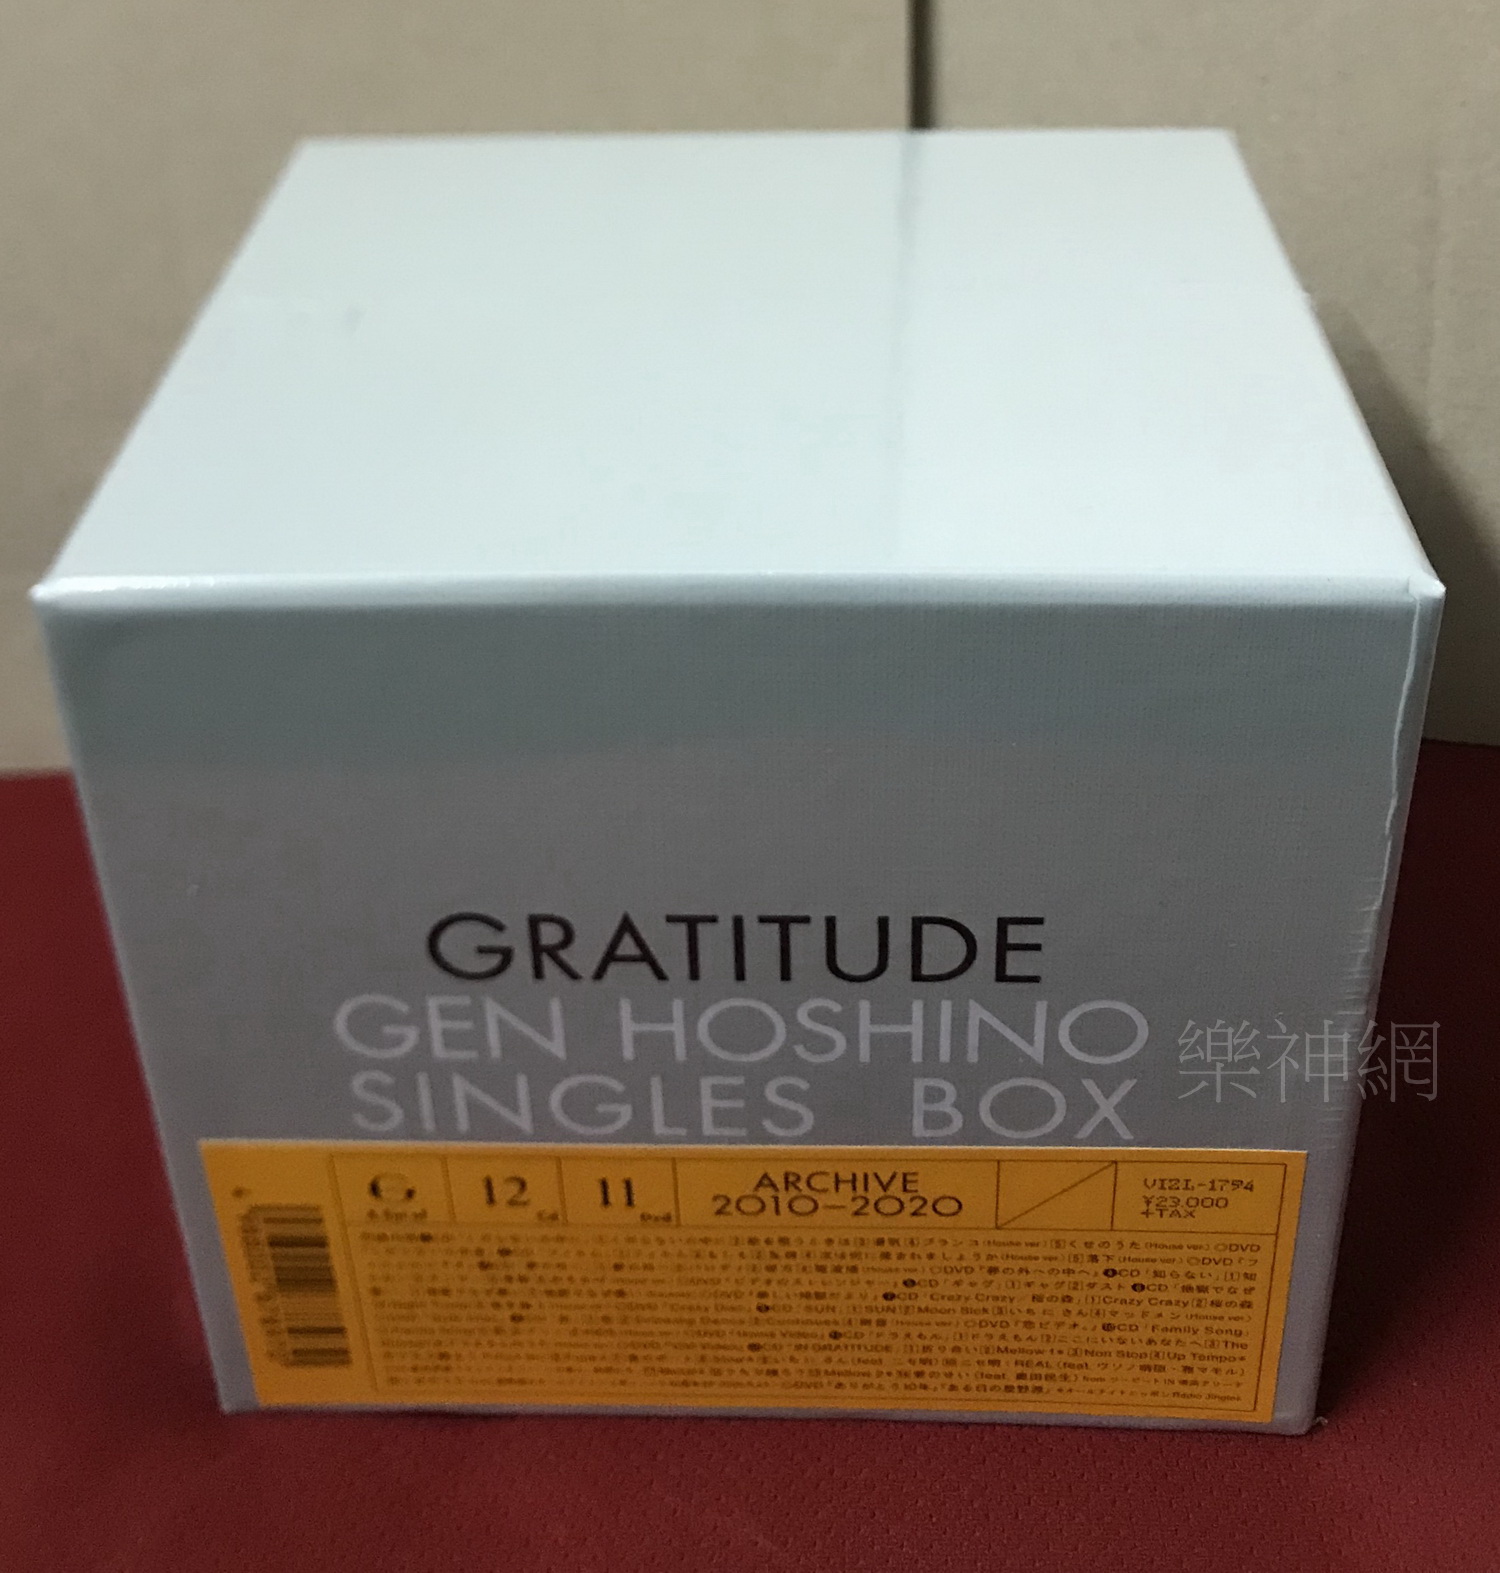 Victor - 星野源Singles Box GRATITUDE (特典CD+特典DVD)の通販 by いっち's shop｜ビクターならラクマ -  CD